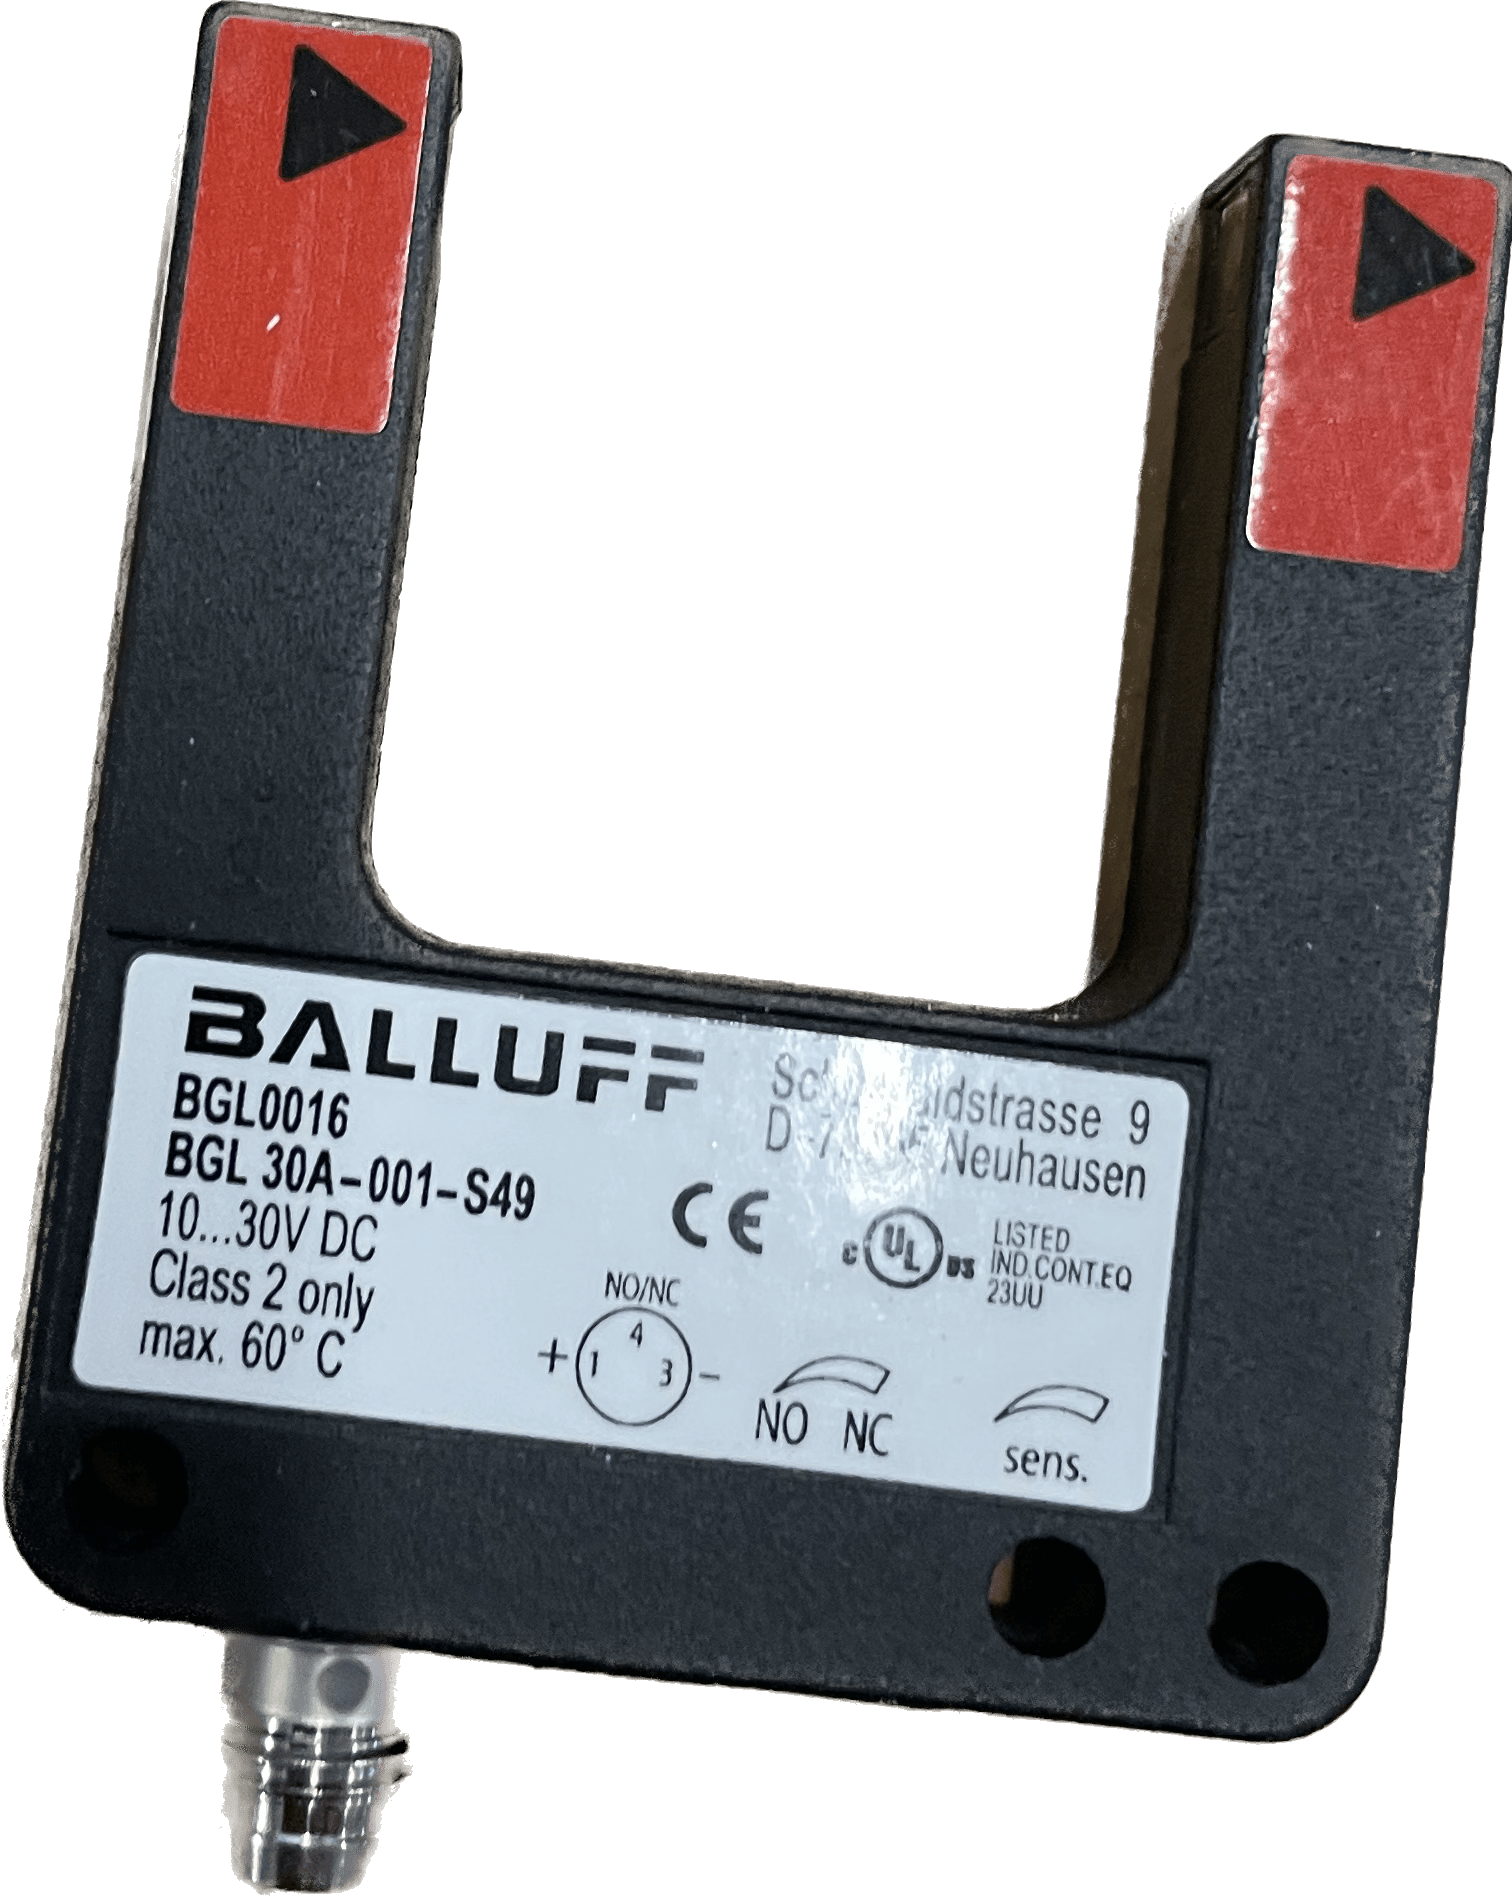 BALLUFF Gabellichtschranken im Metallgehäuse BGL 30A-001-S49 - #product_category# | Klenk Maschinenhandel